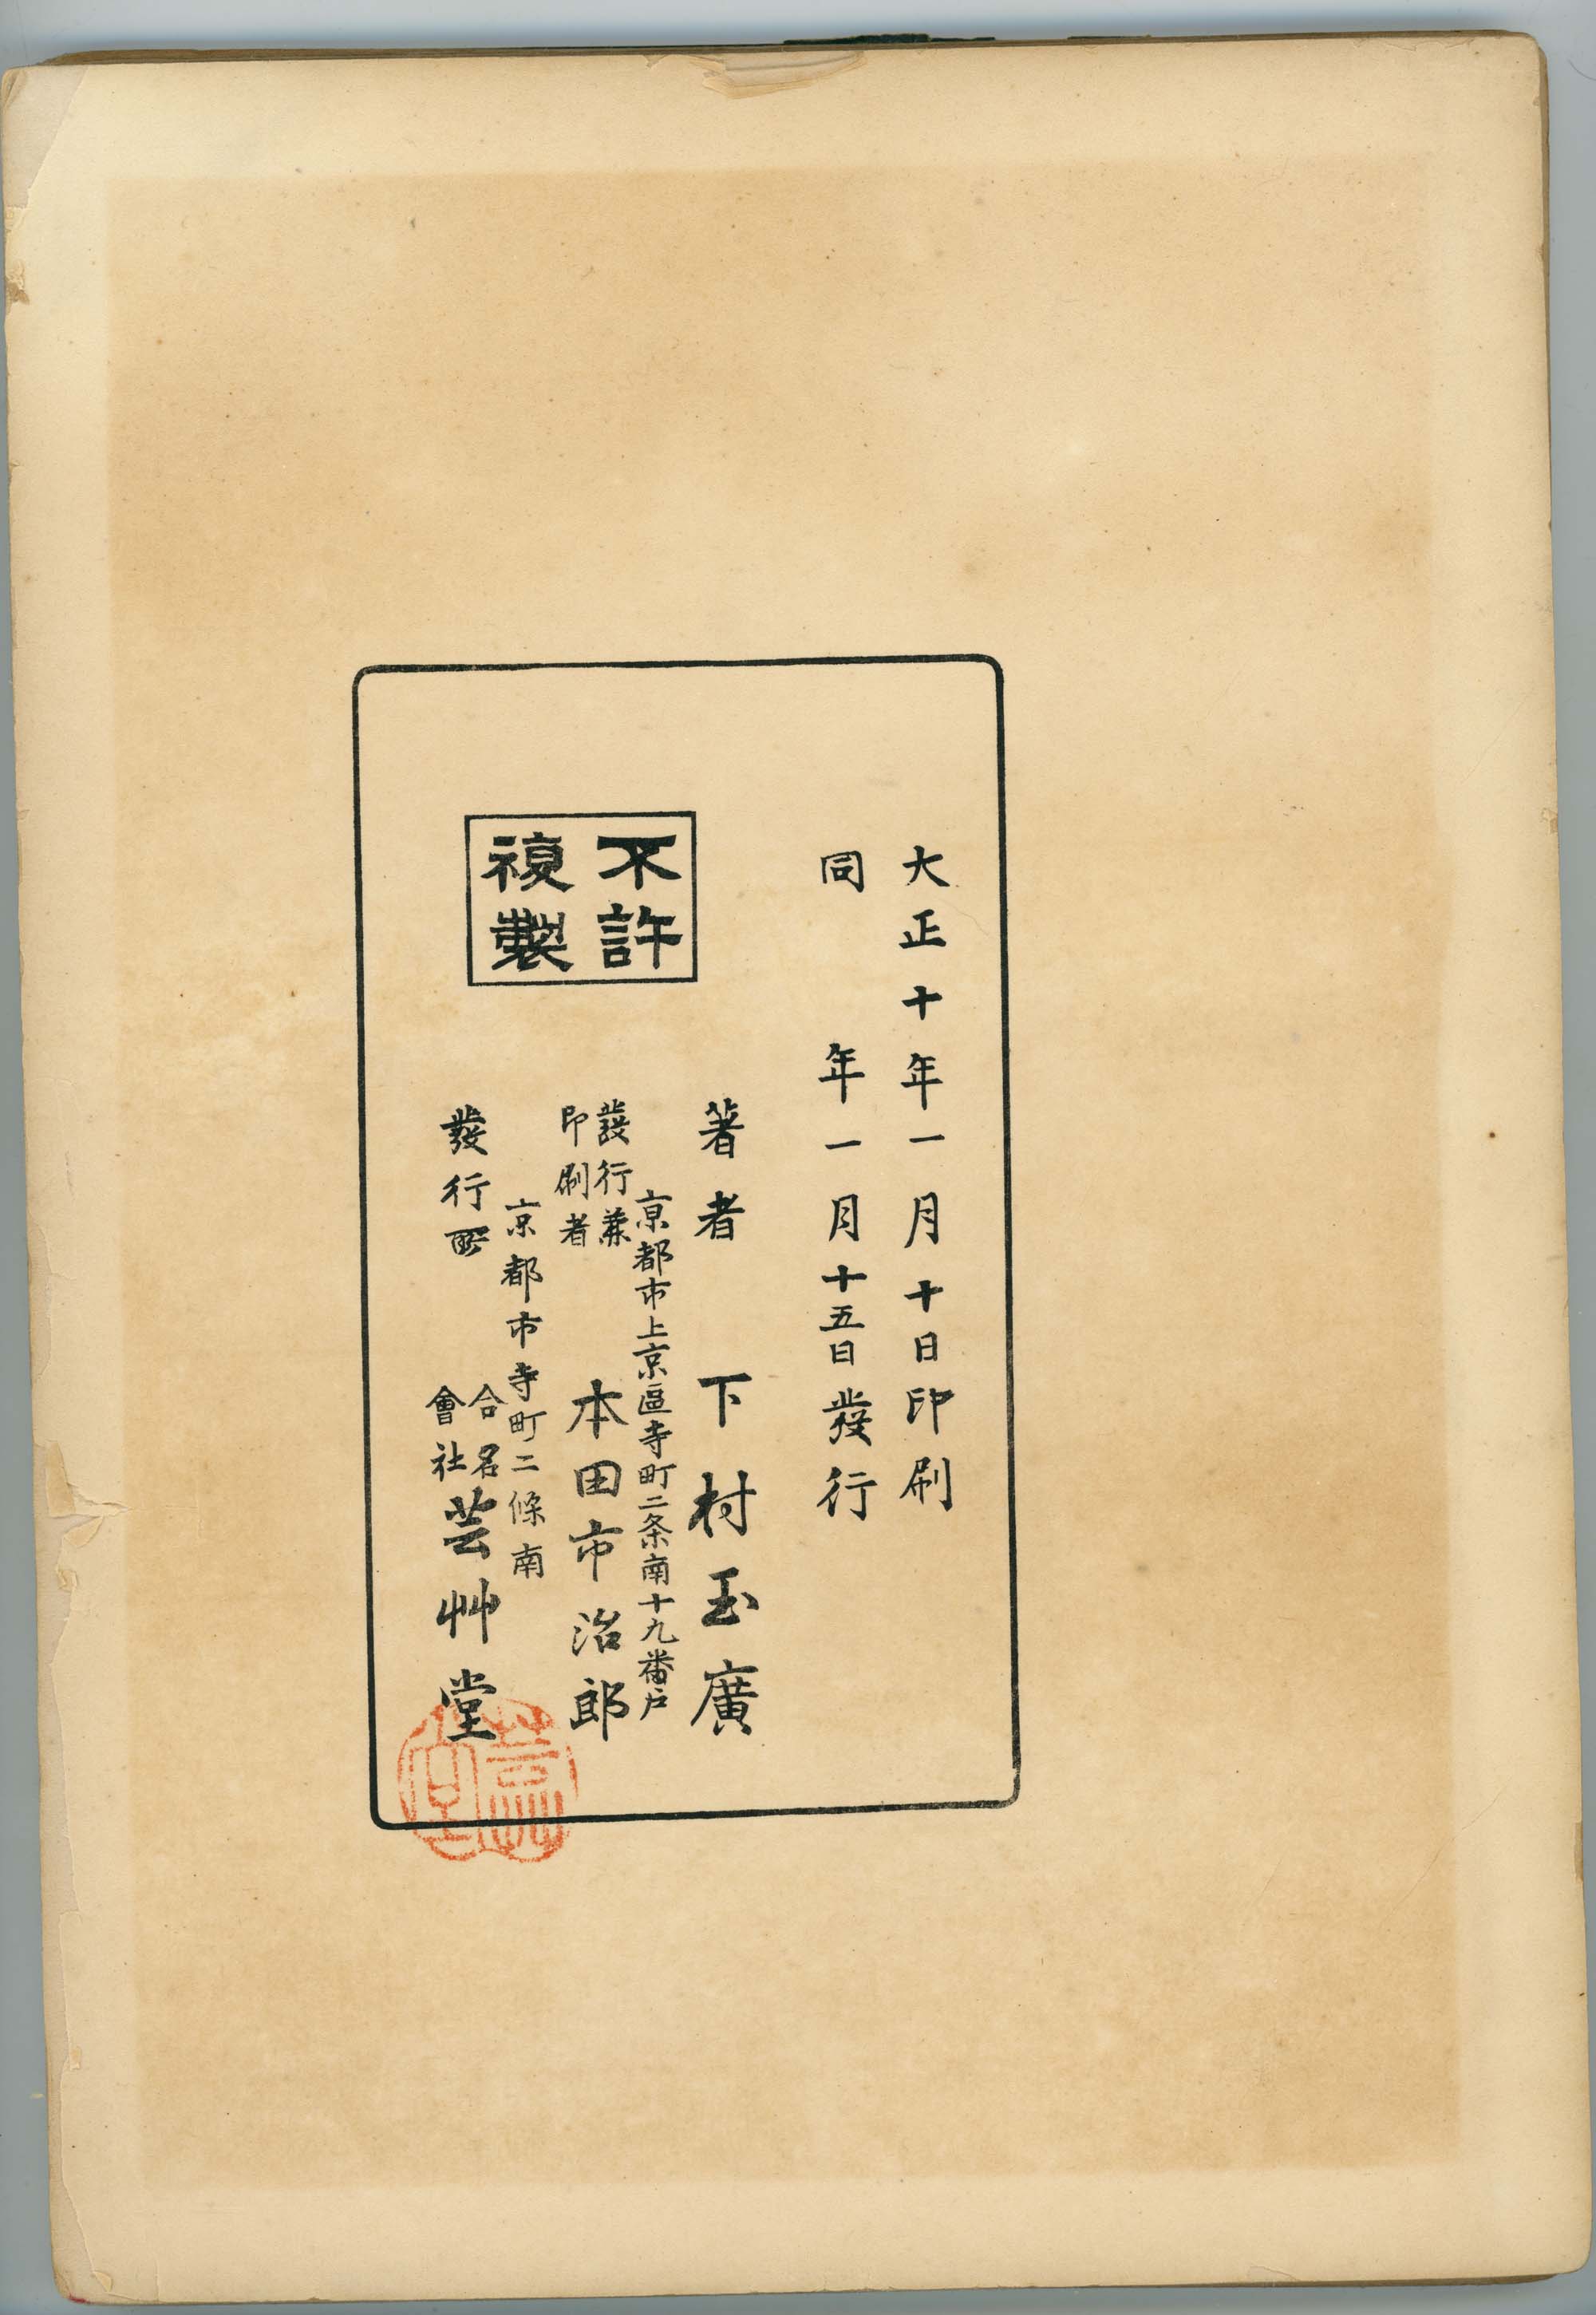 錦袋帖 Nishiki fukuro-choi - A bag of Nishiki designs, Unsodo - 1921 (Taisho  10) / Shimomura Tamahiro (下村玉廣)